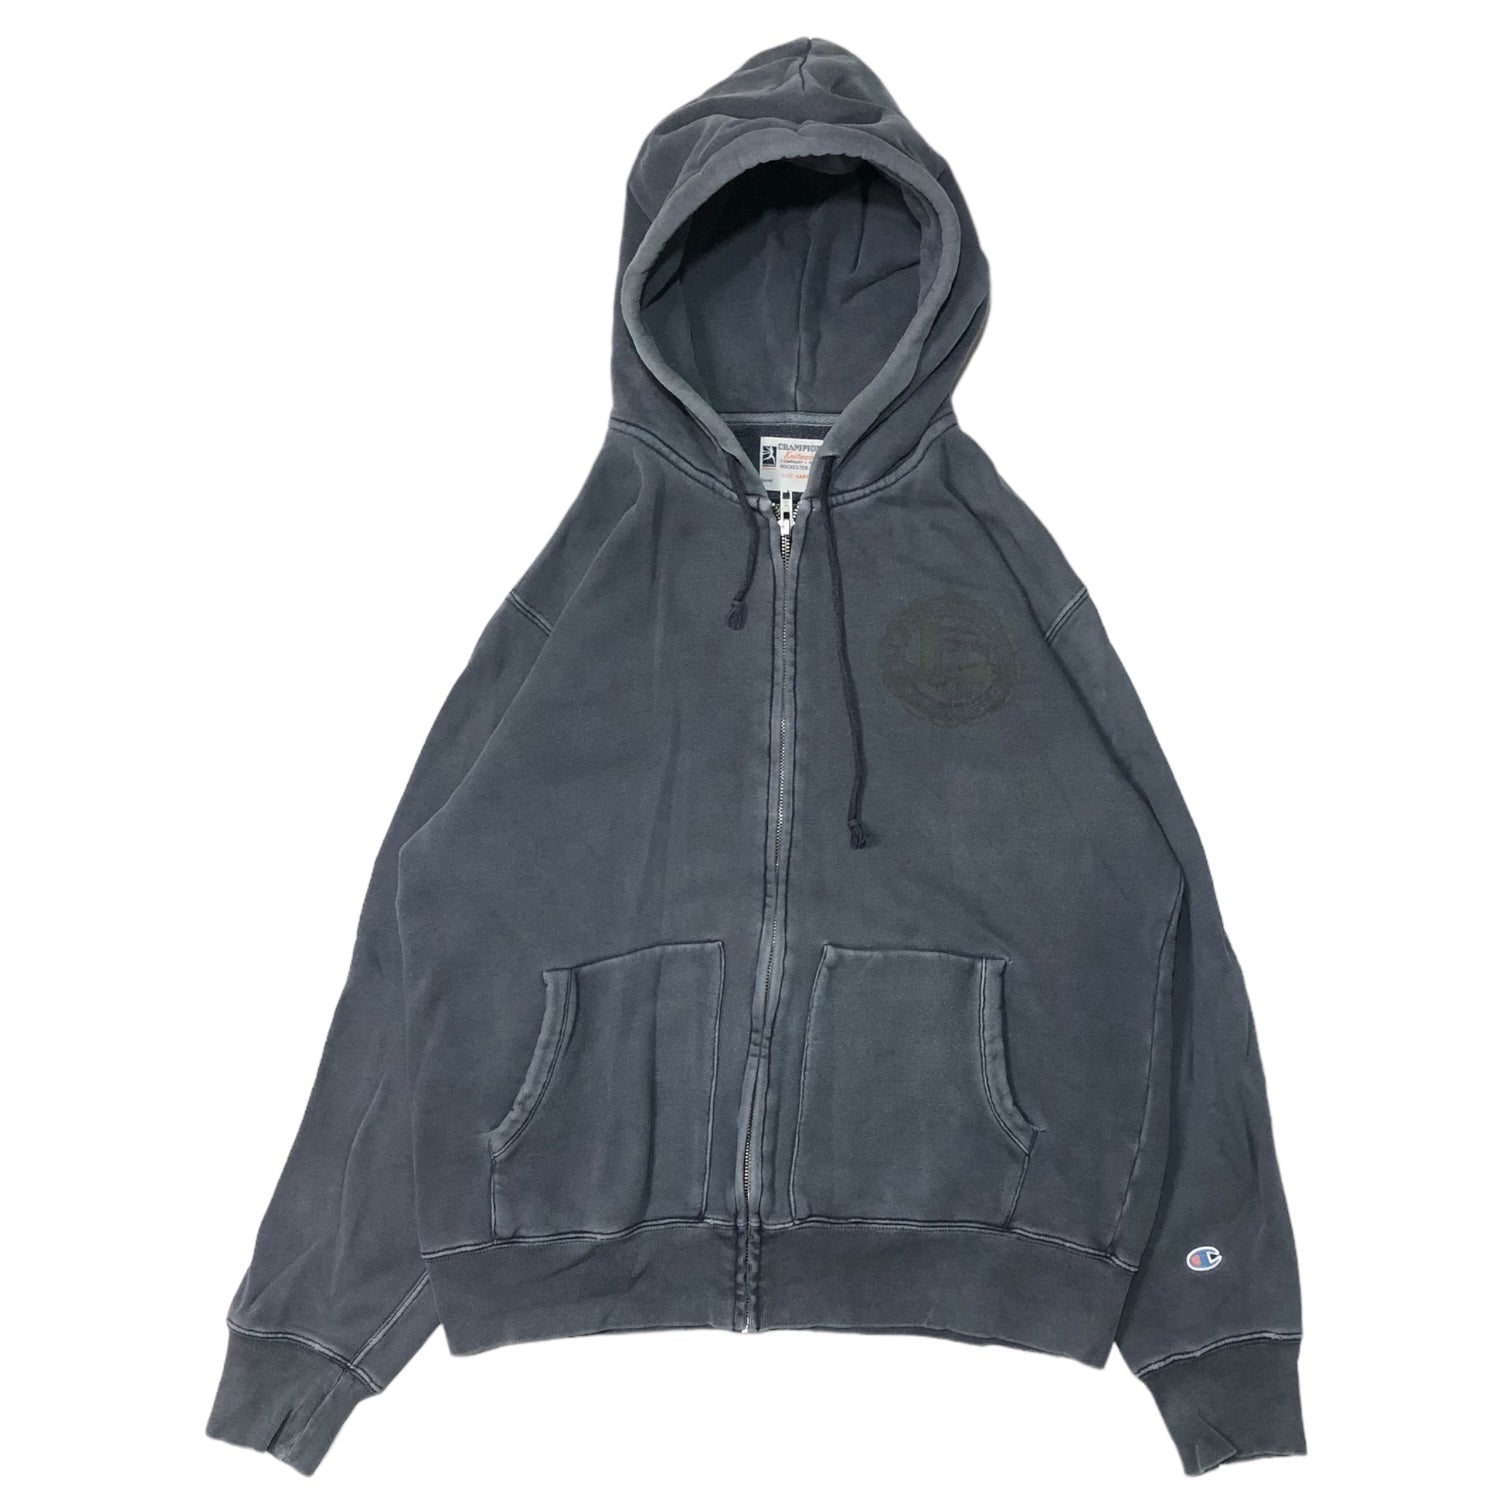 STUSSY×Champion(ステューシー×チャンピオン) vintage processed zip hoodie ヴィンテージ加工 ジップ パーカー L グレー